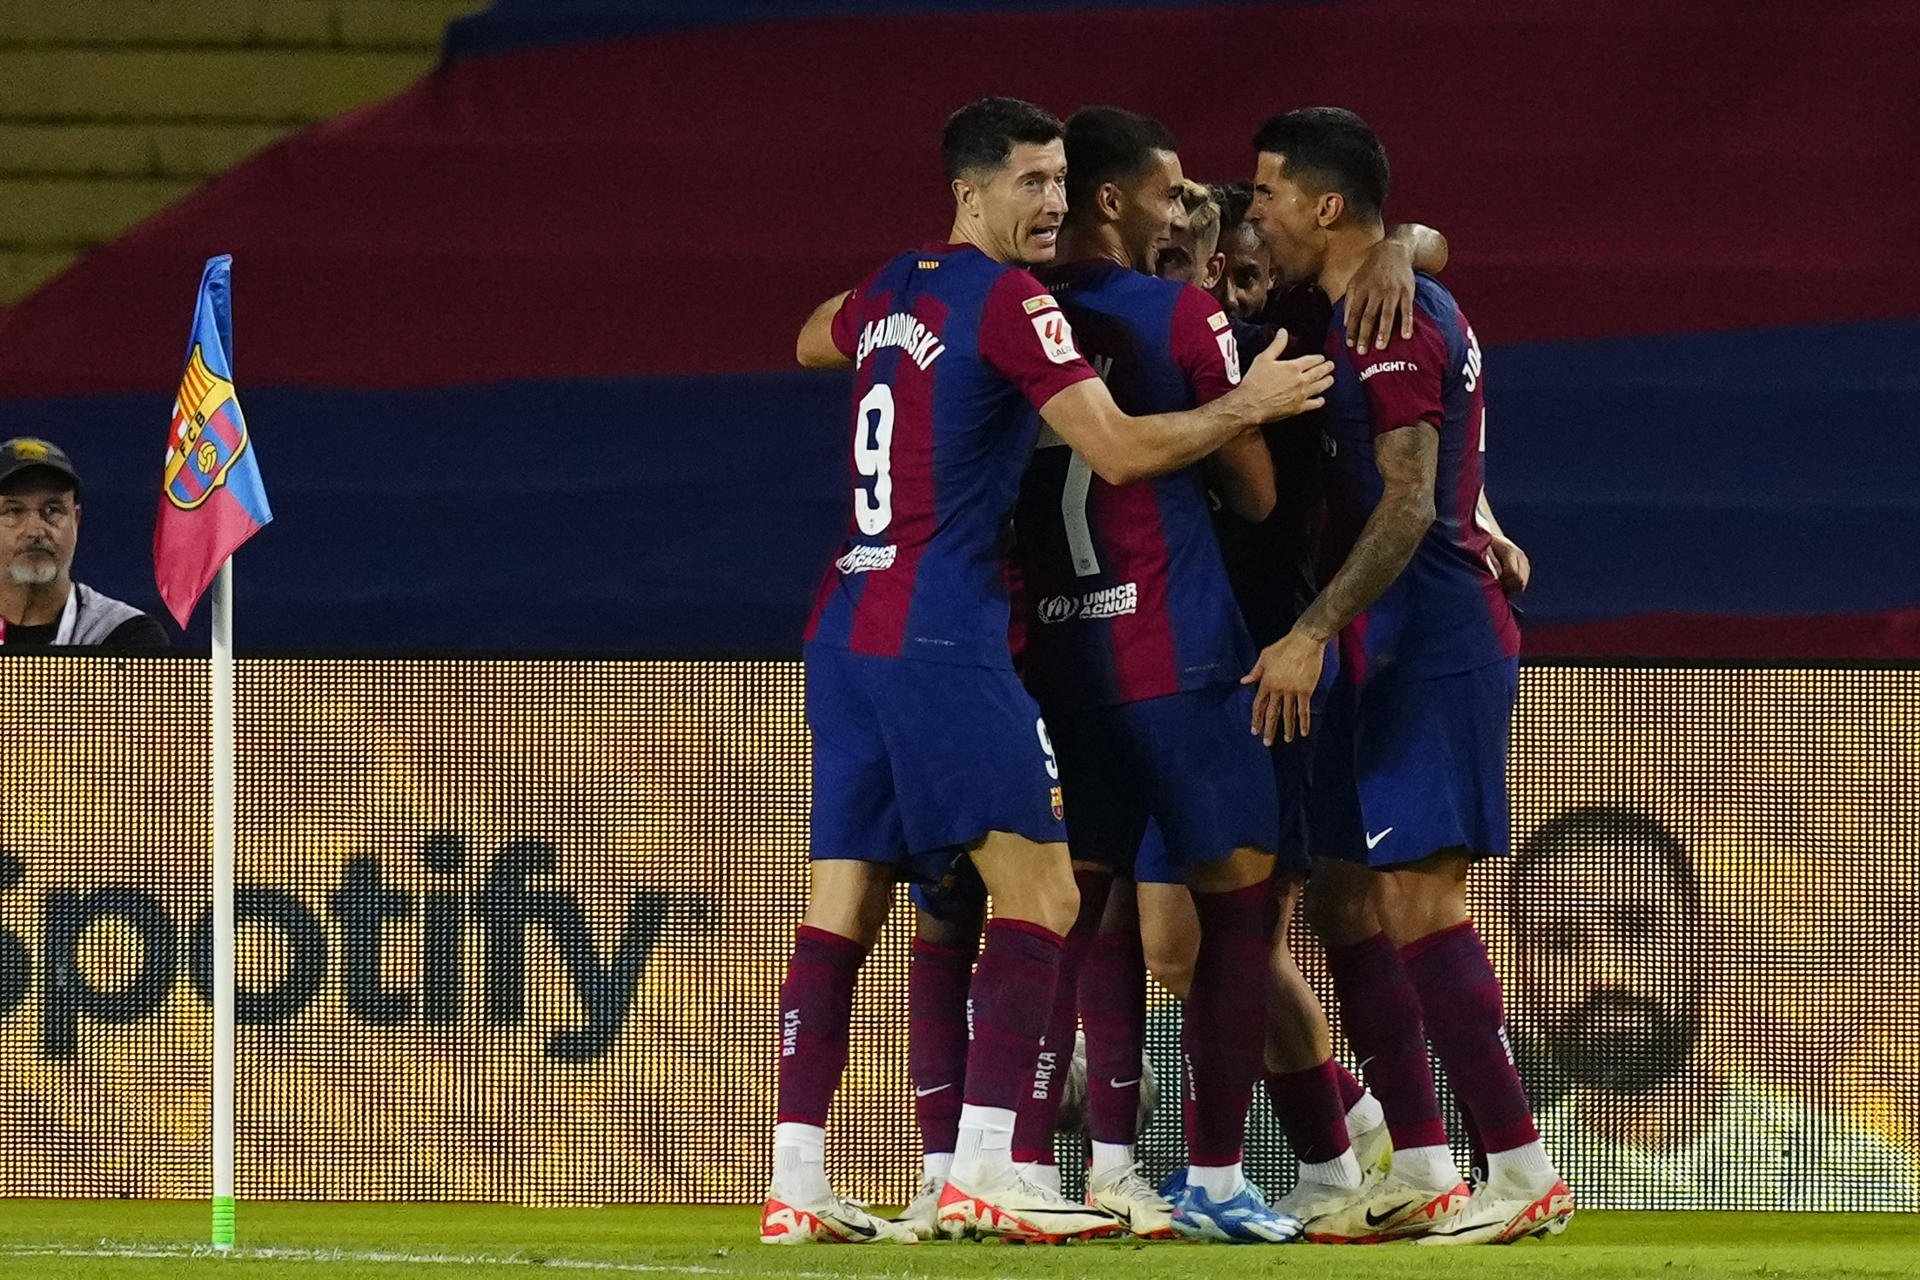 El Barça supera el Sevilla en un disputat partit gràcies a un gol en pròpia porteria de Sergio Ramos (1-0)